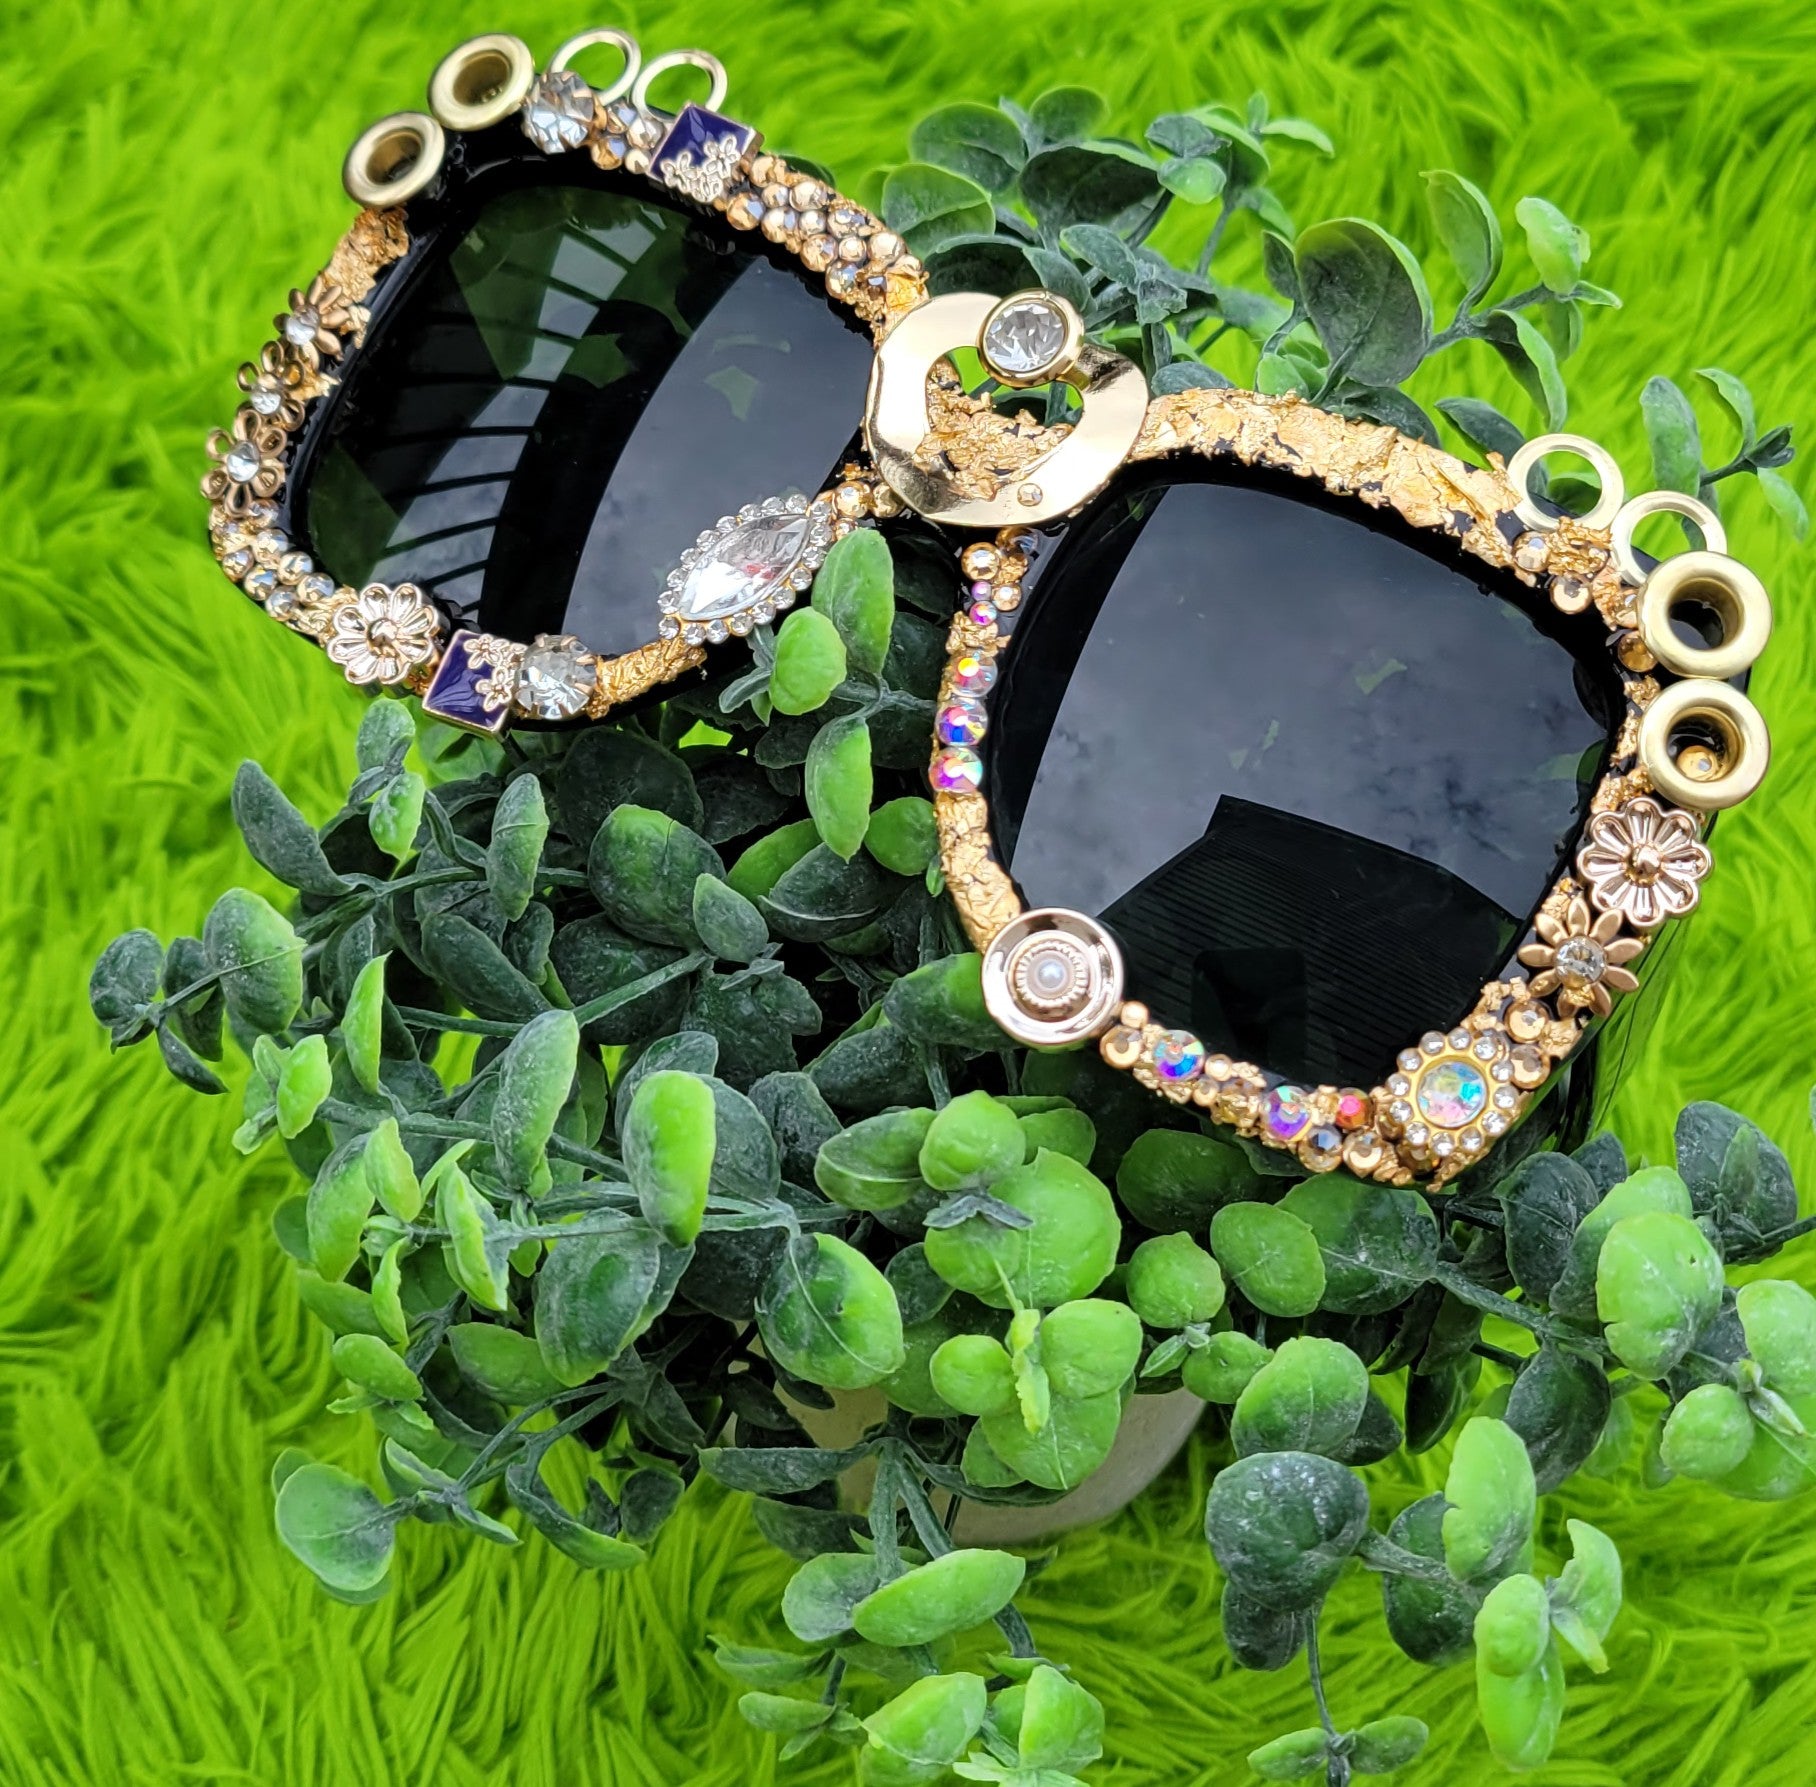 Badazzled Sunglasses – Polarized UV Protection for Women and Men's  Designer Fashion Eyewear